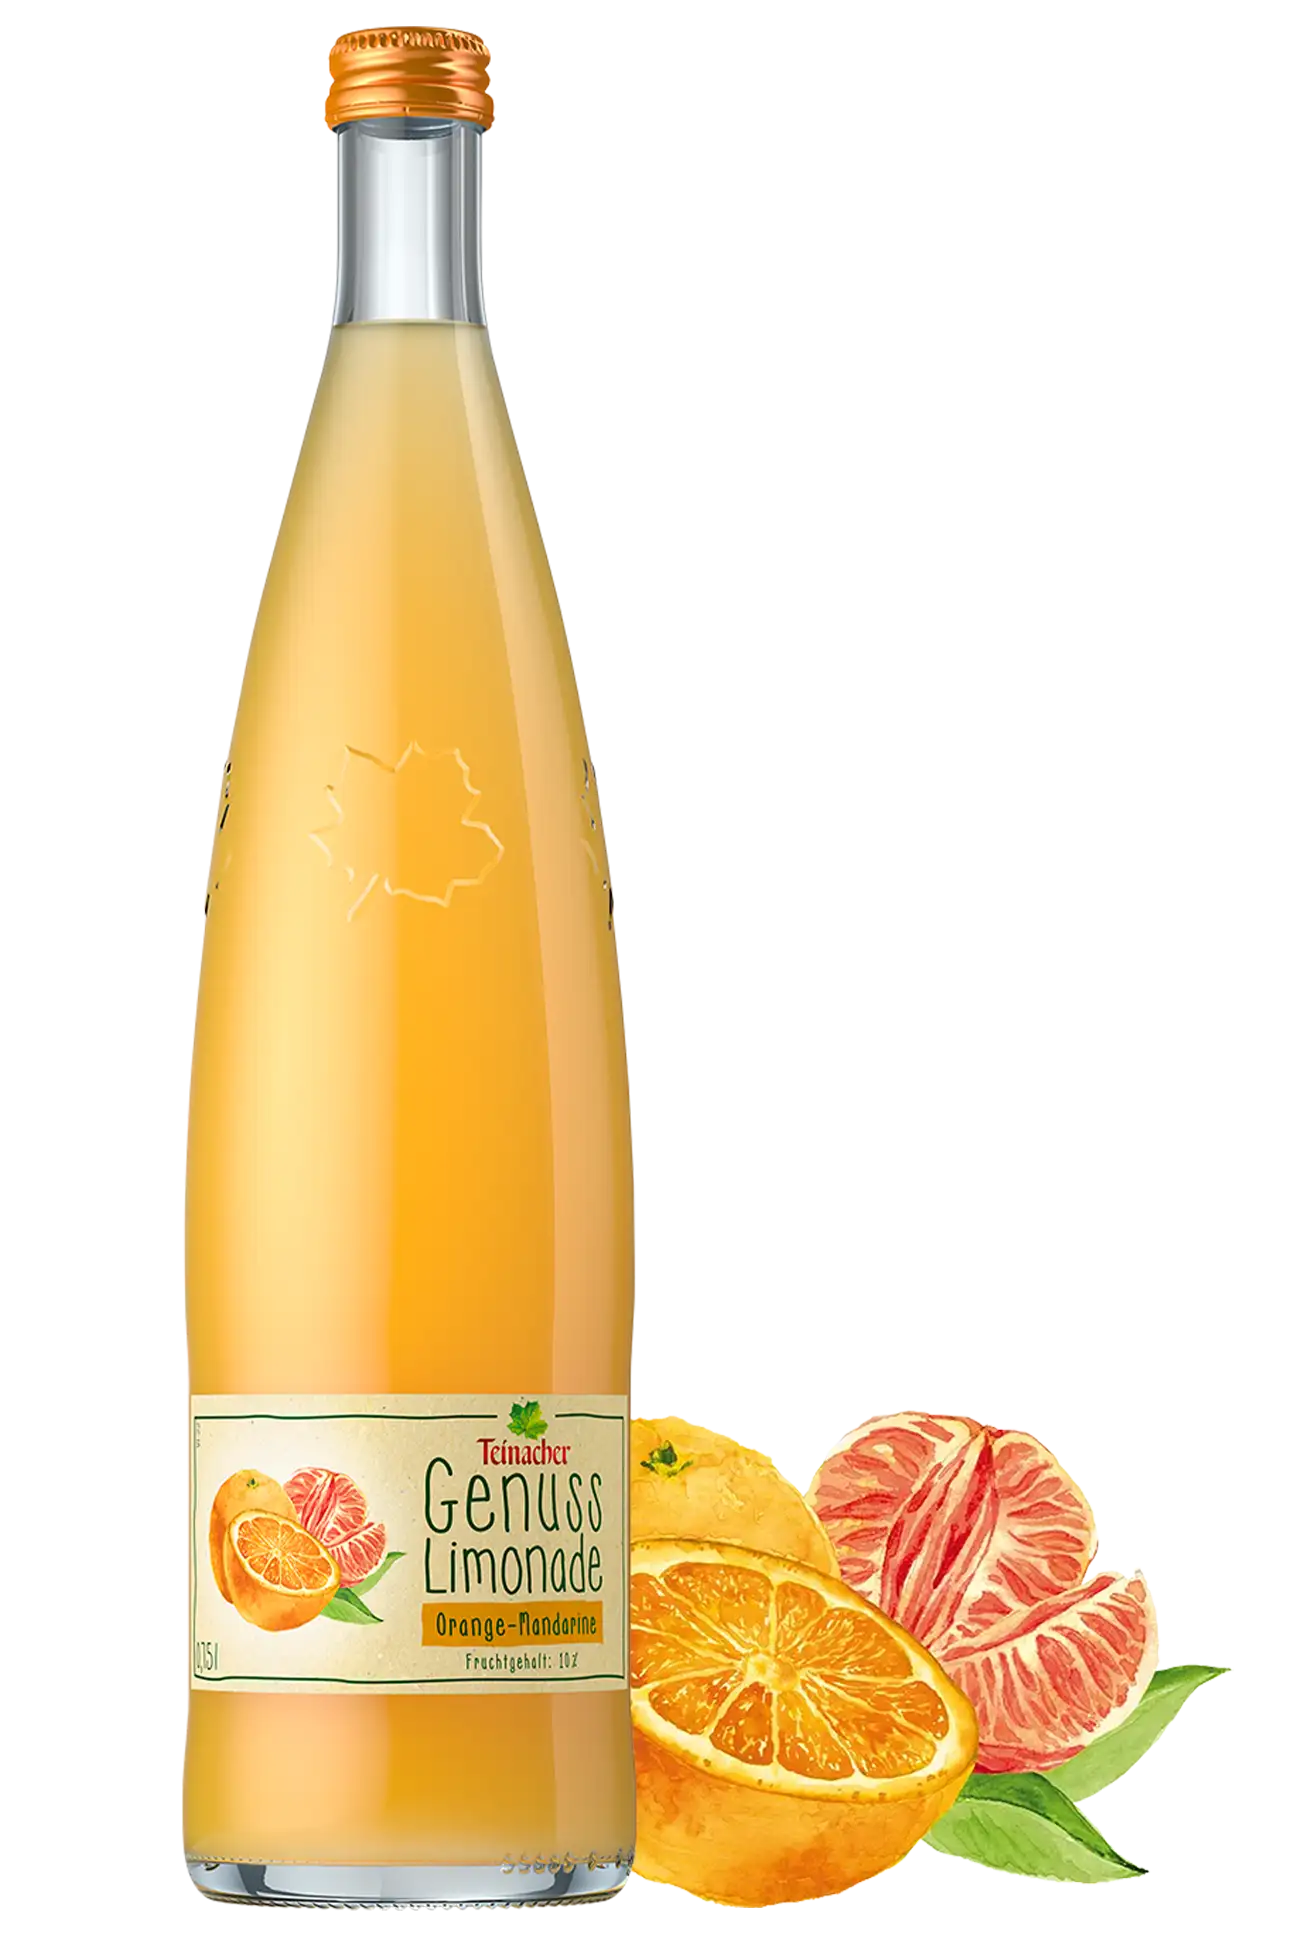 Eine Teinacher Genuss-Limonade Orange-Mandarine in der 0,75 Liter Genussflasche neben Orangen und Mandarine